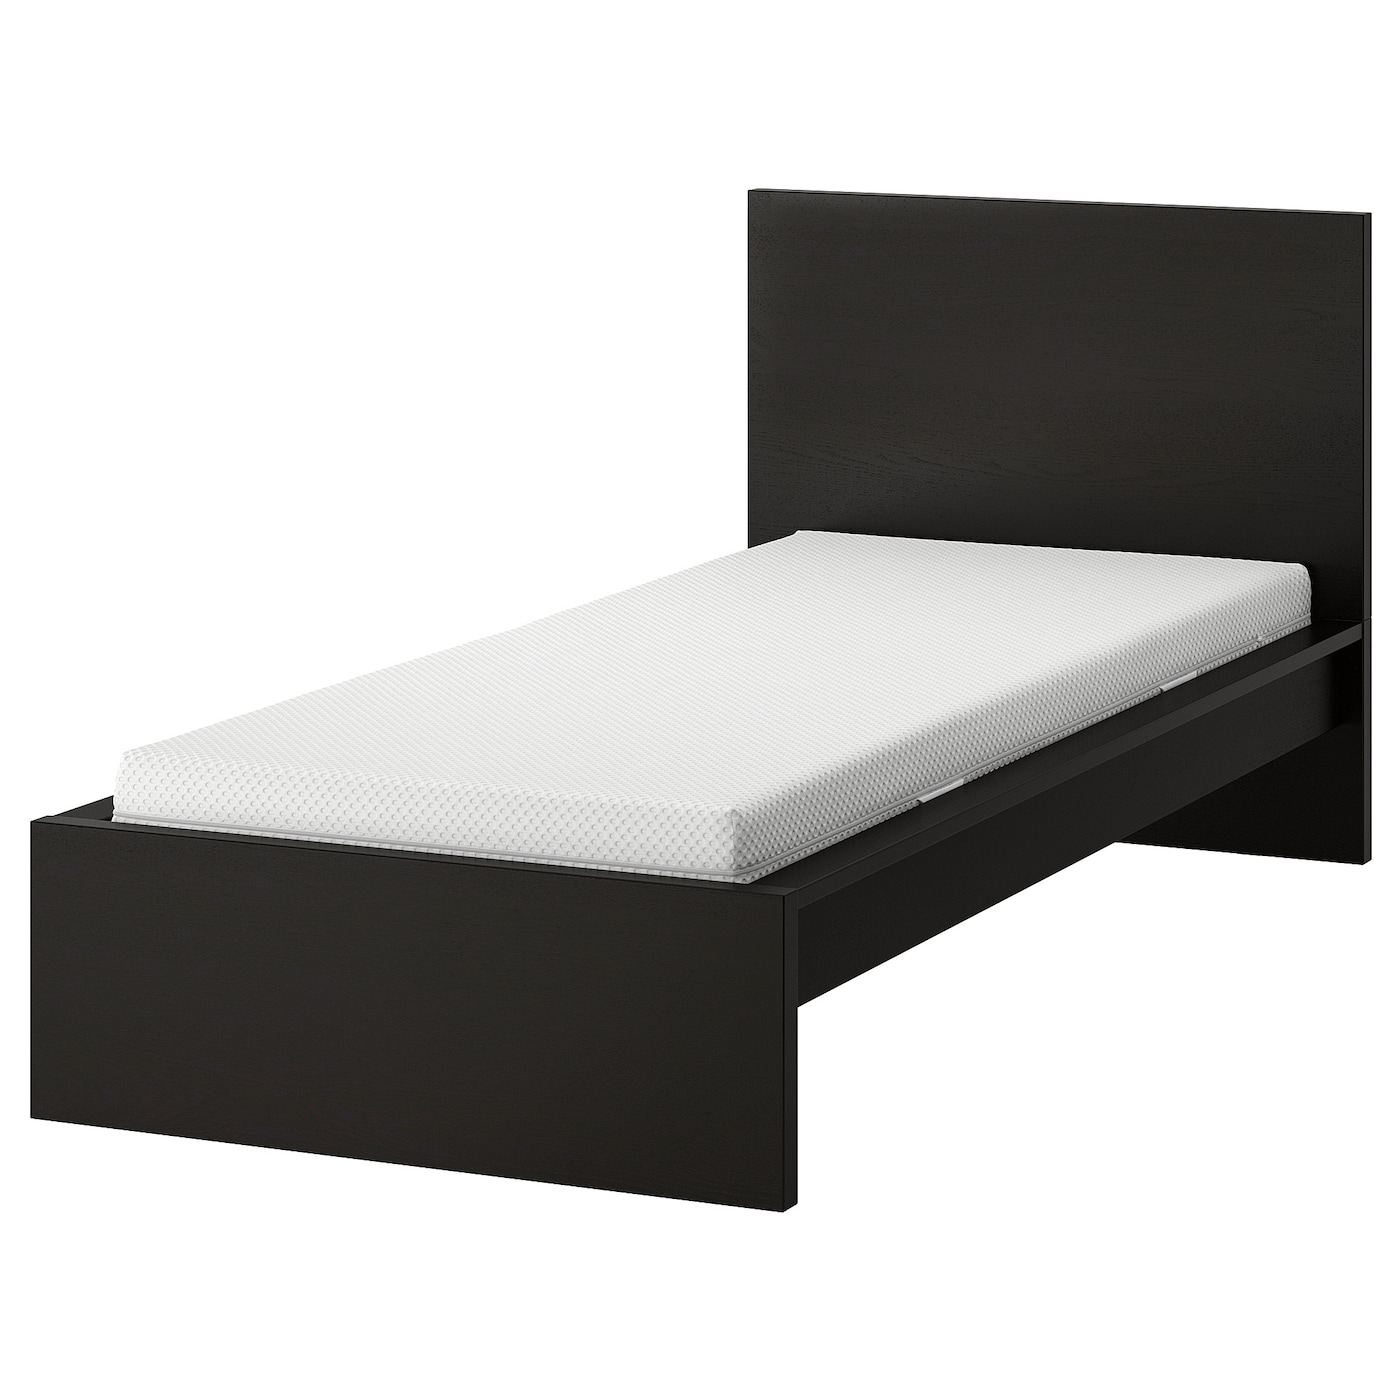 Кровать - IKEA MALM, 200х90 см, матрас средне-жесткий, черный, МАЛЬМ ИКЕА